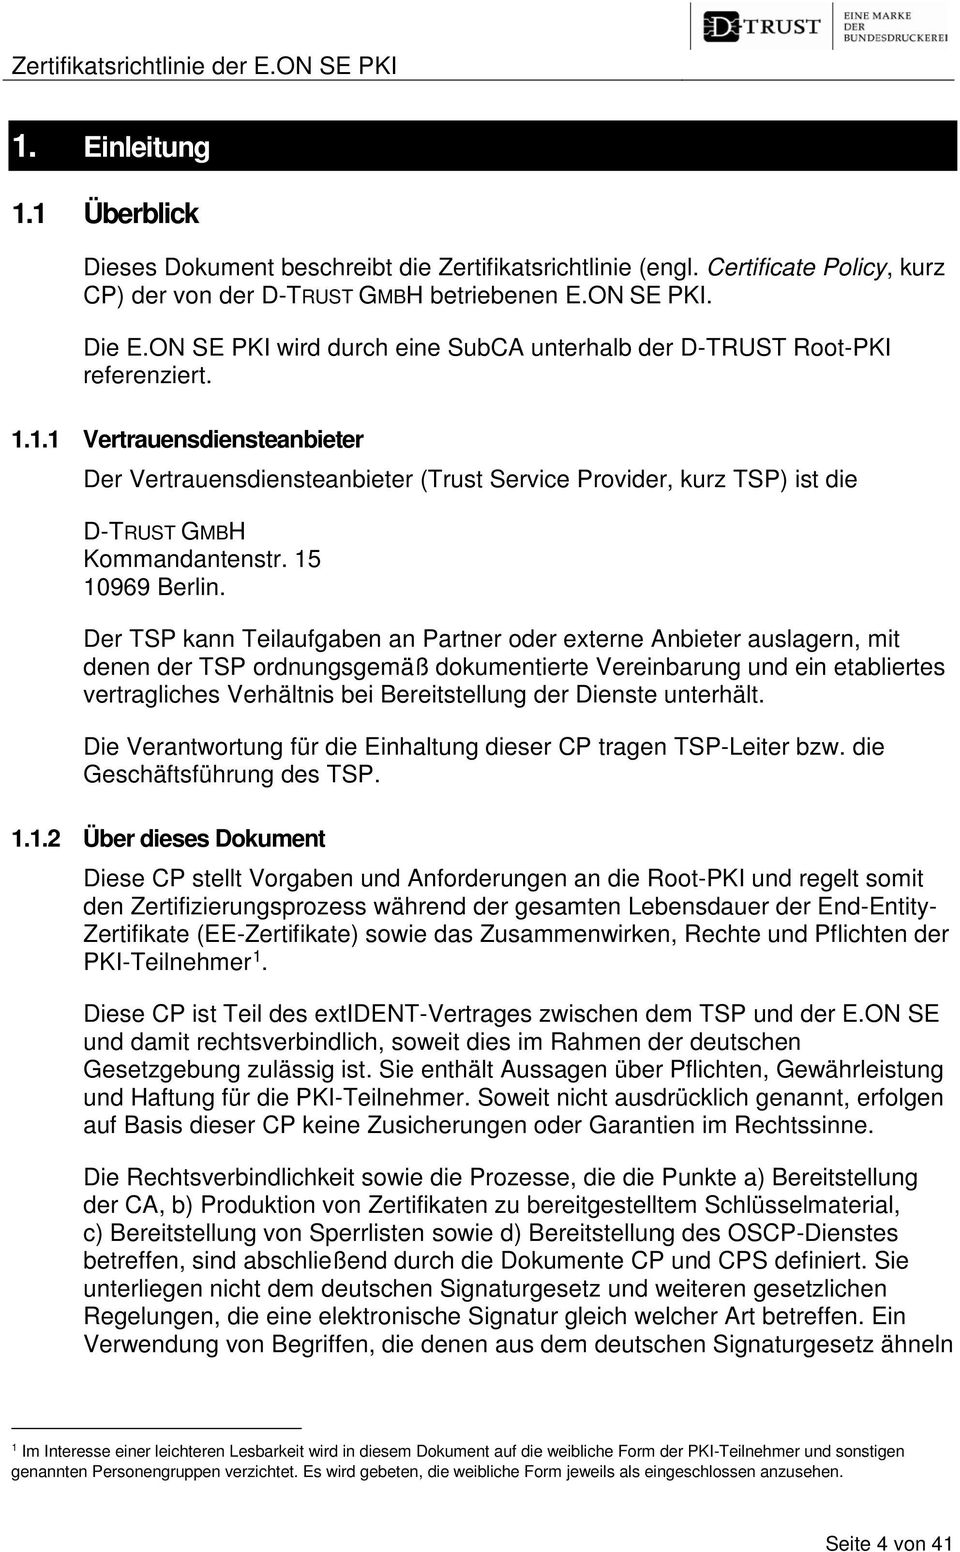 1.1 Vertrauensdiensteanbieter Der Vertrauensdiensteanbieter (Trust Service Provider, kurz TSP) ist die D-TRUST GMBH Kommandantenstr. 15 10969 Berlin.